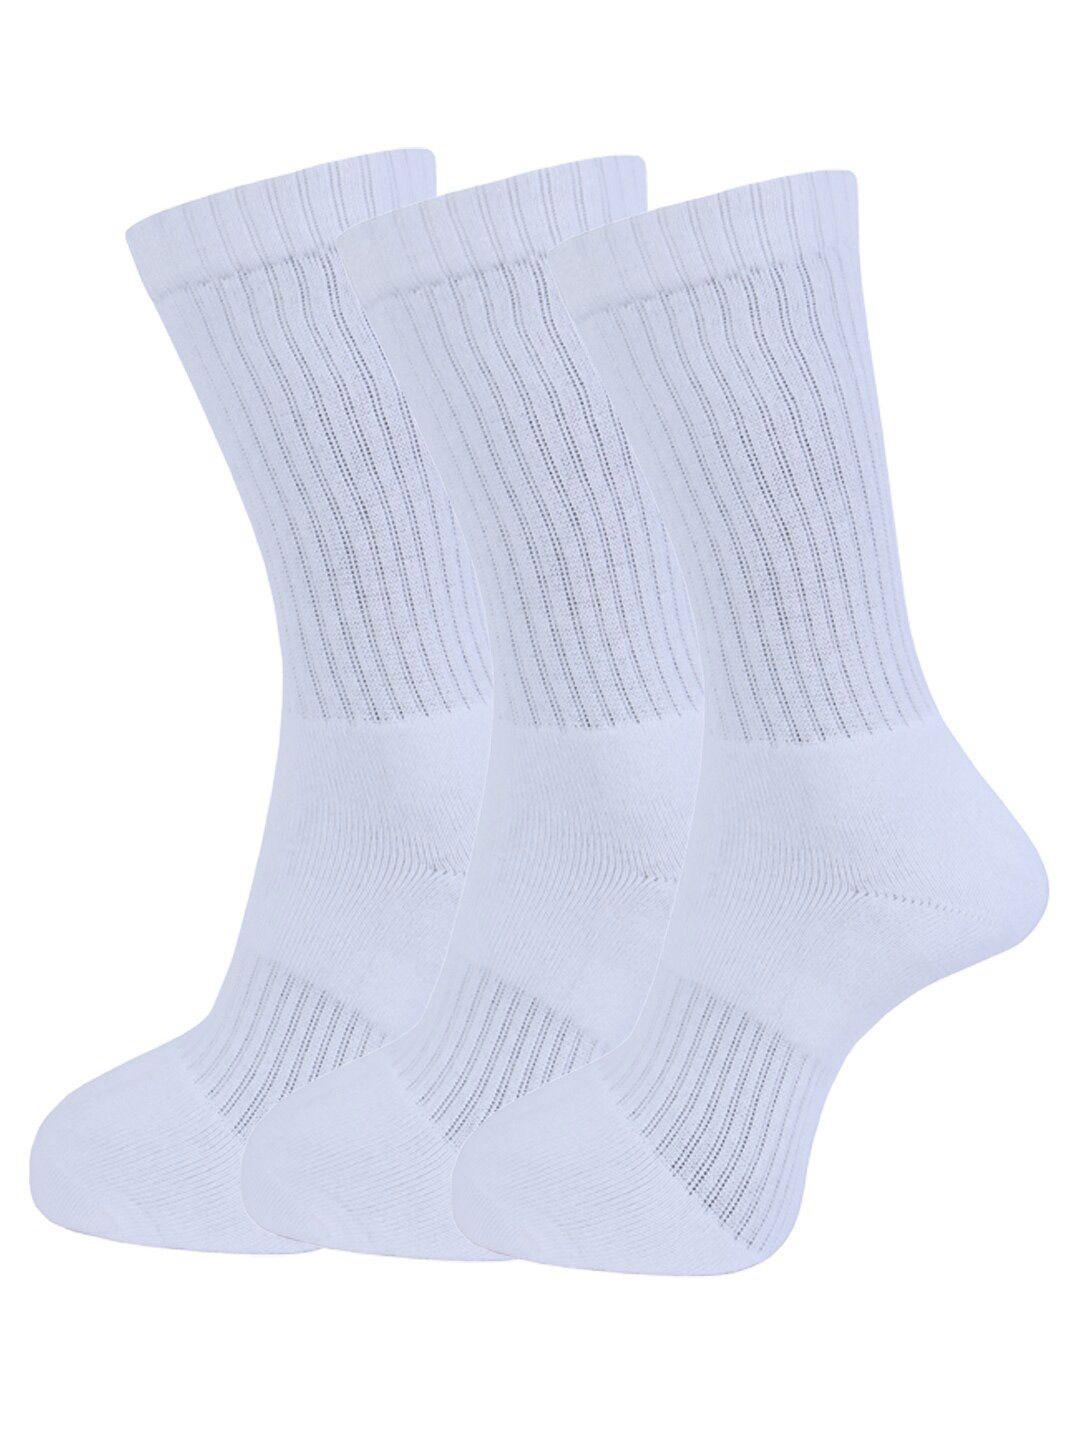 dollar socks men pack of 3 white solid above assorted full length  socks